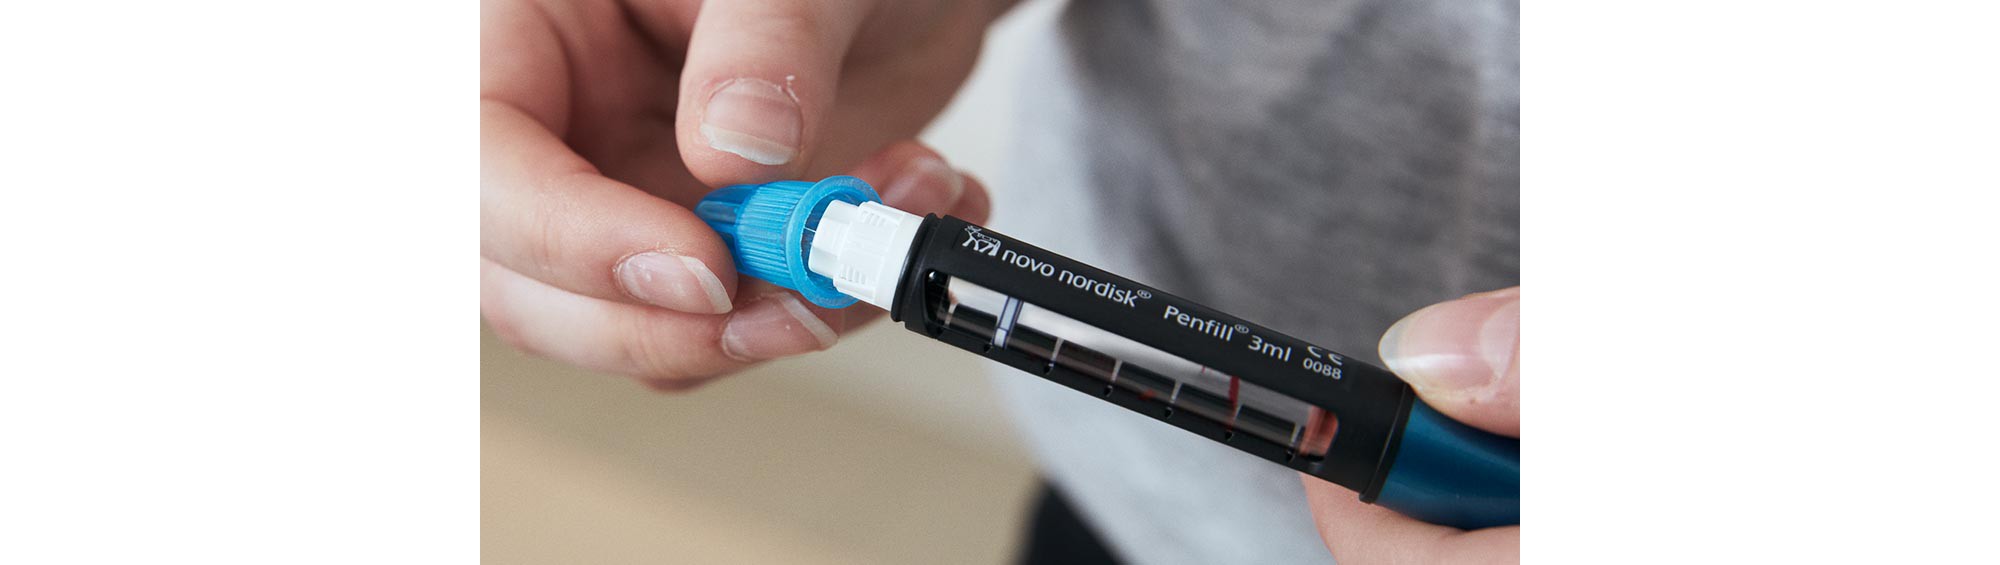 Insulin Pen Needle NovoFine by McKesson